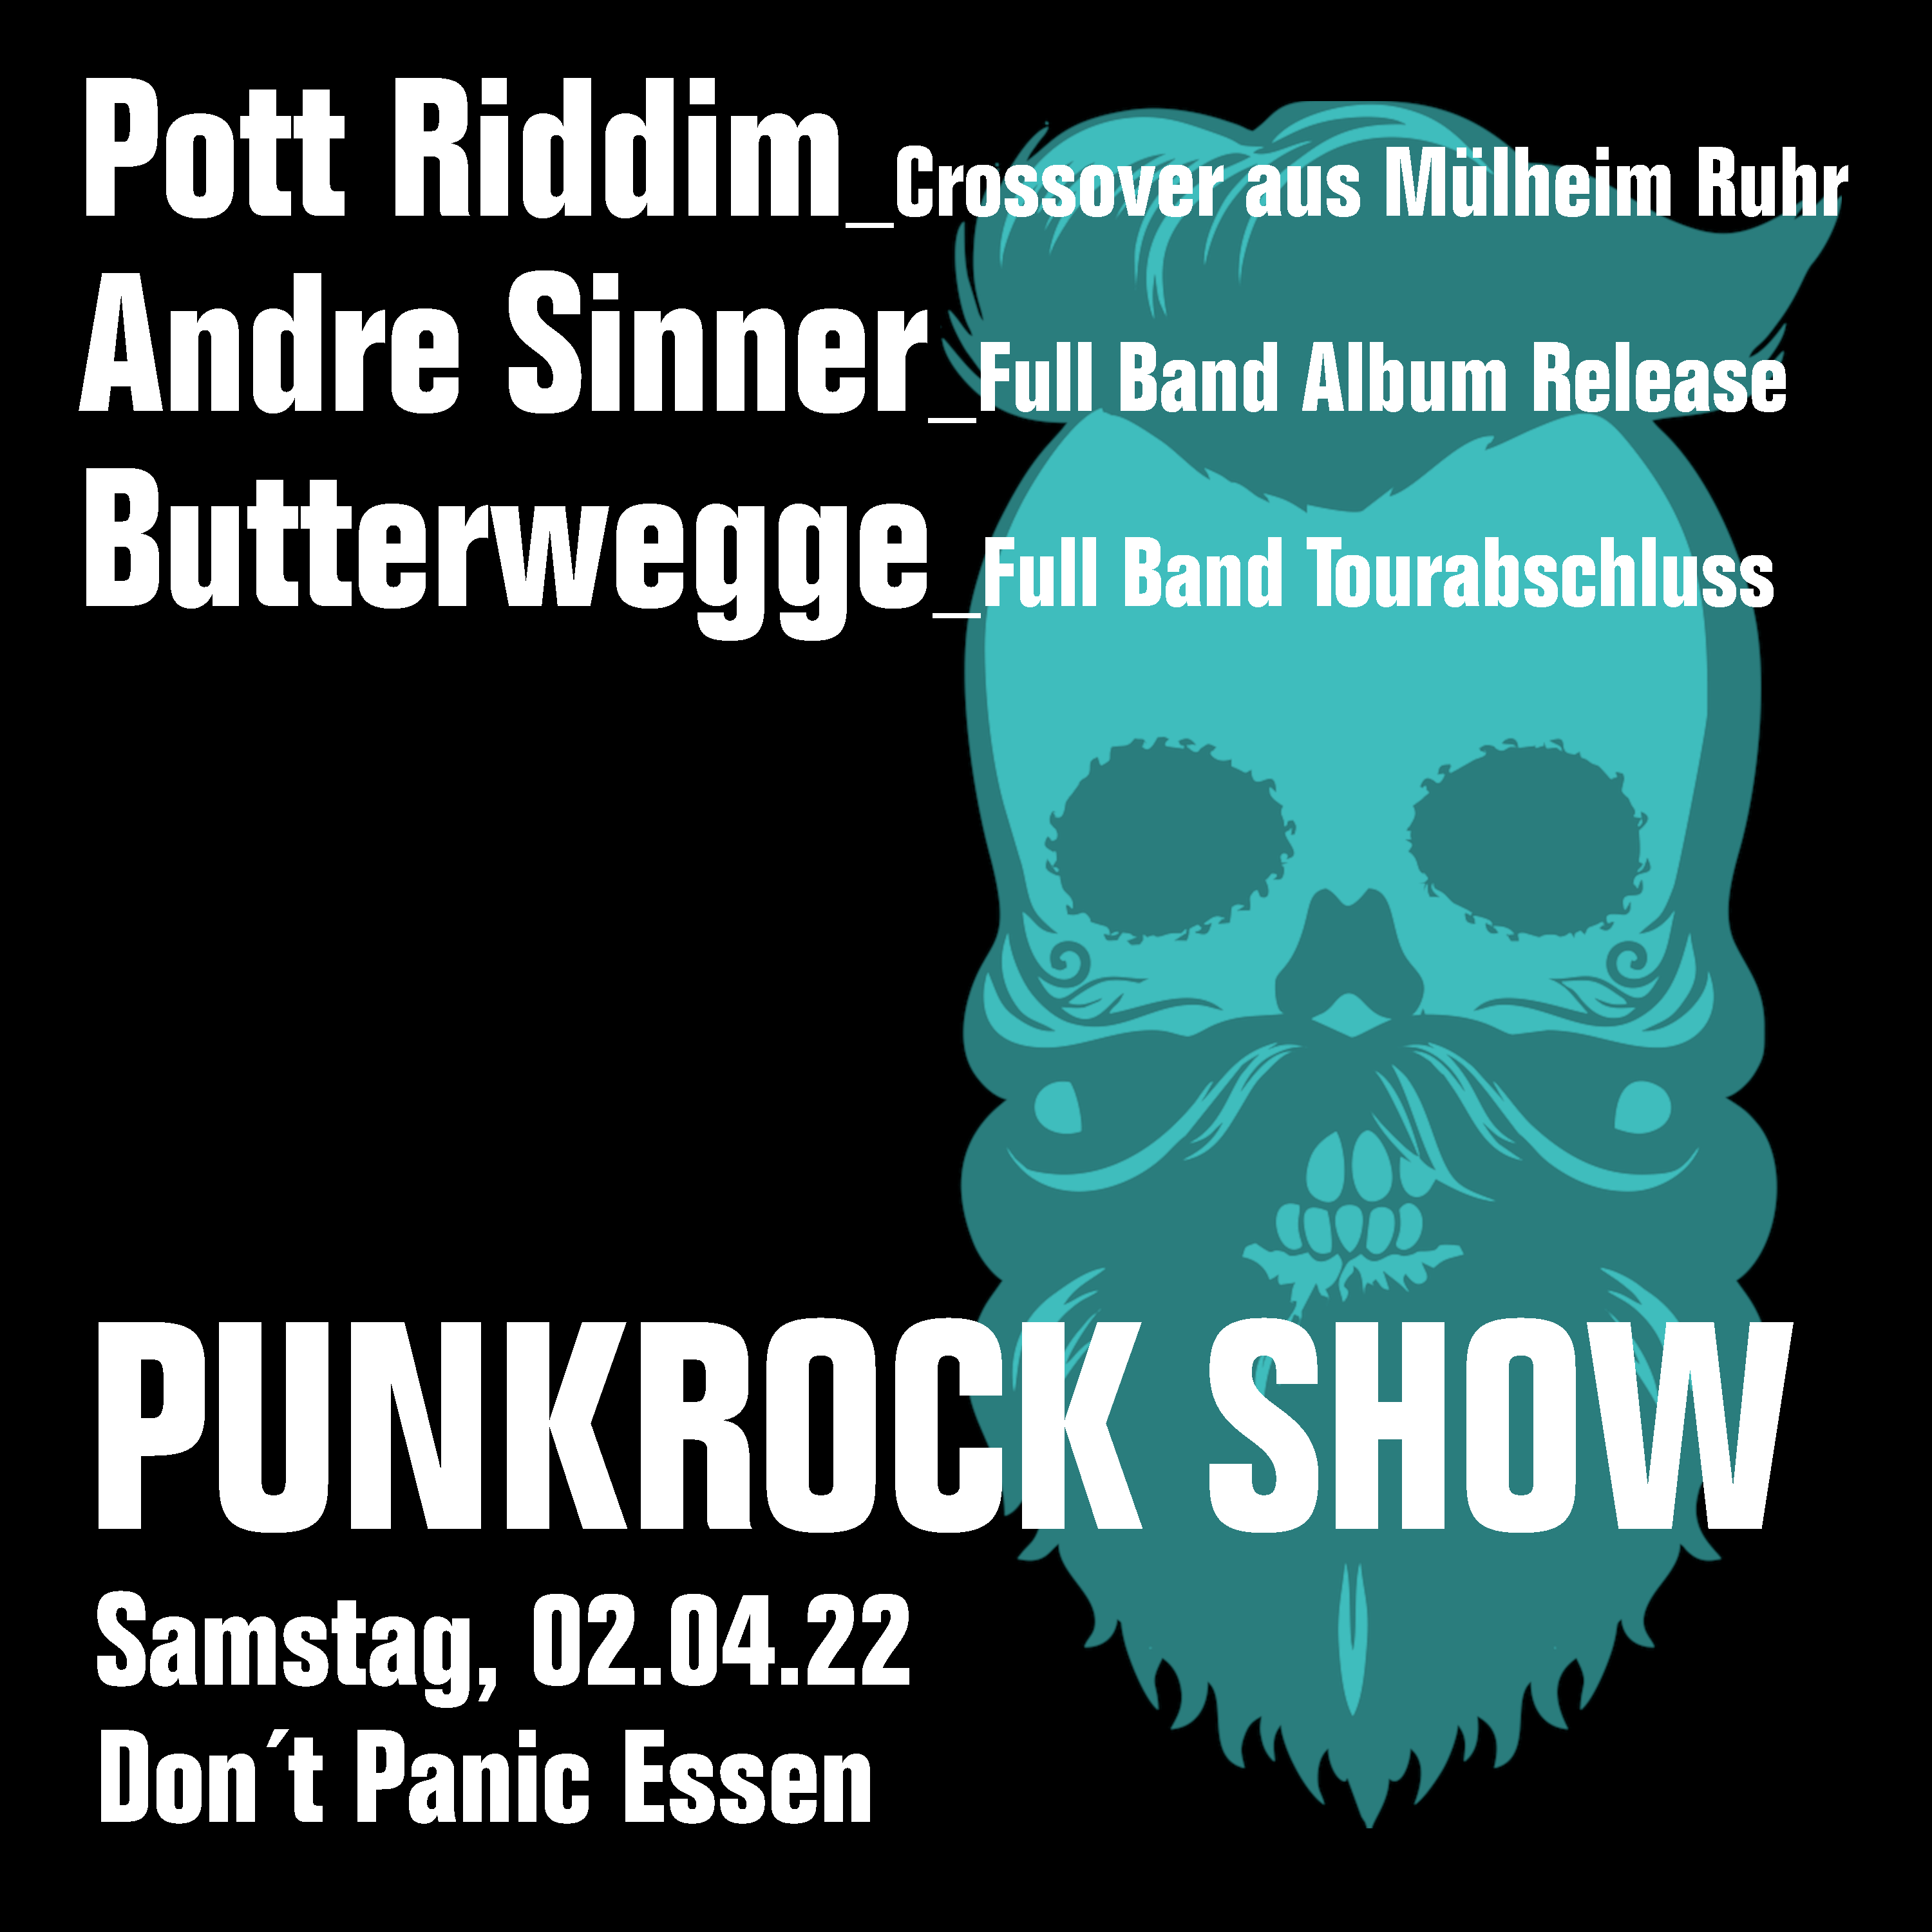 : HardTicket Der Butterwegge (Band),  Andre Sinner (Band) + Pott Riddim